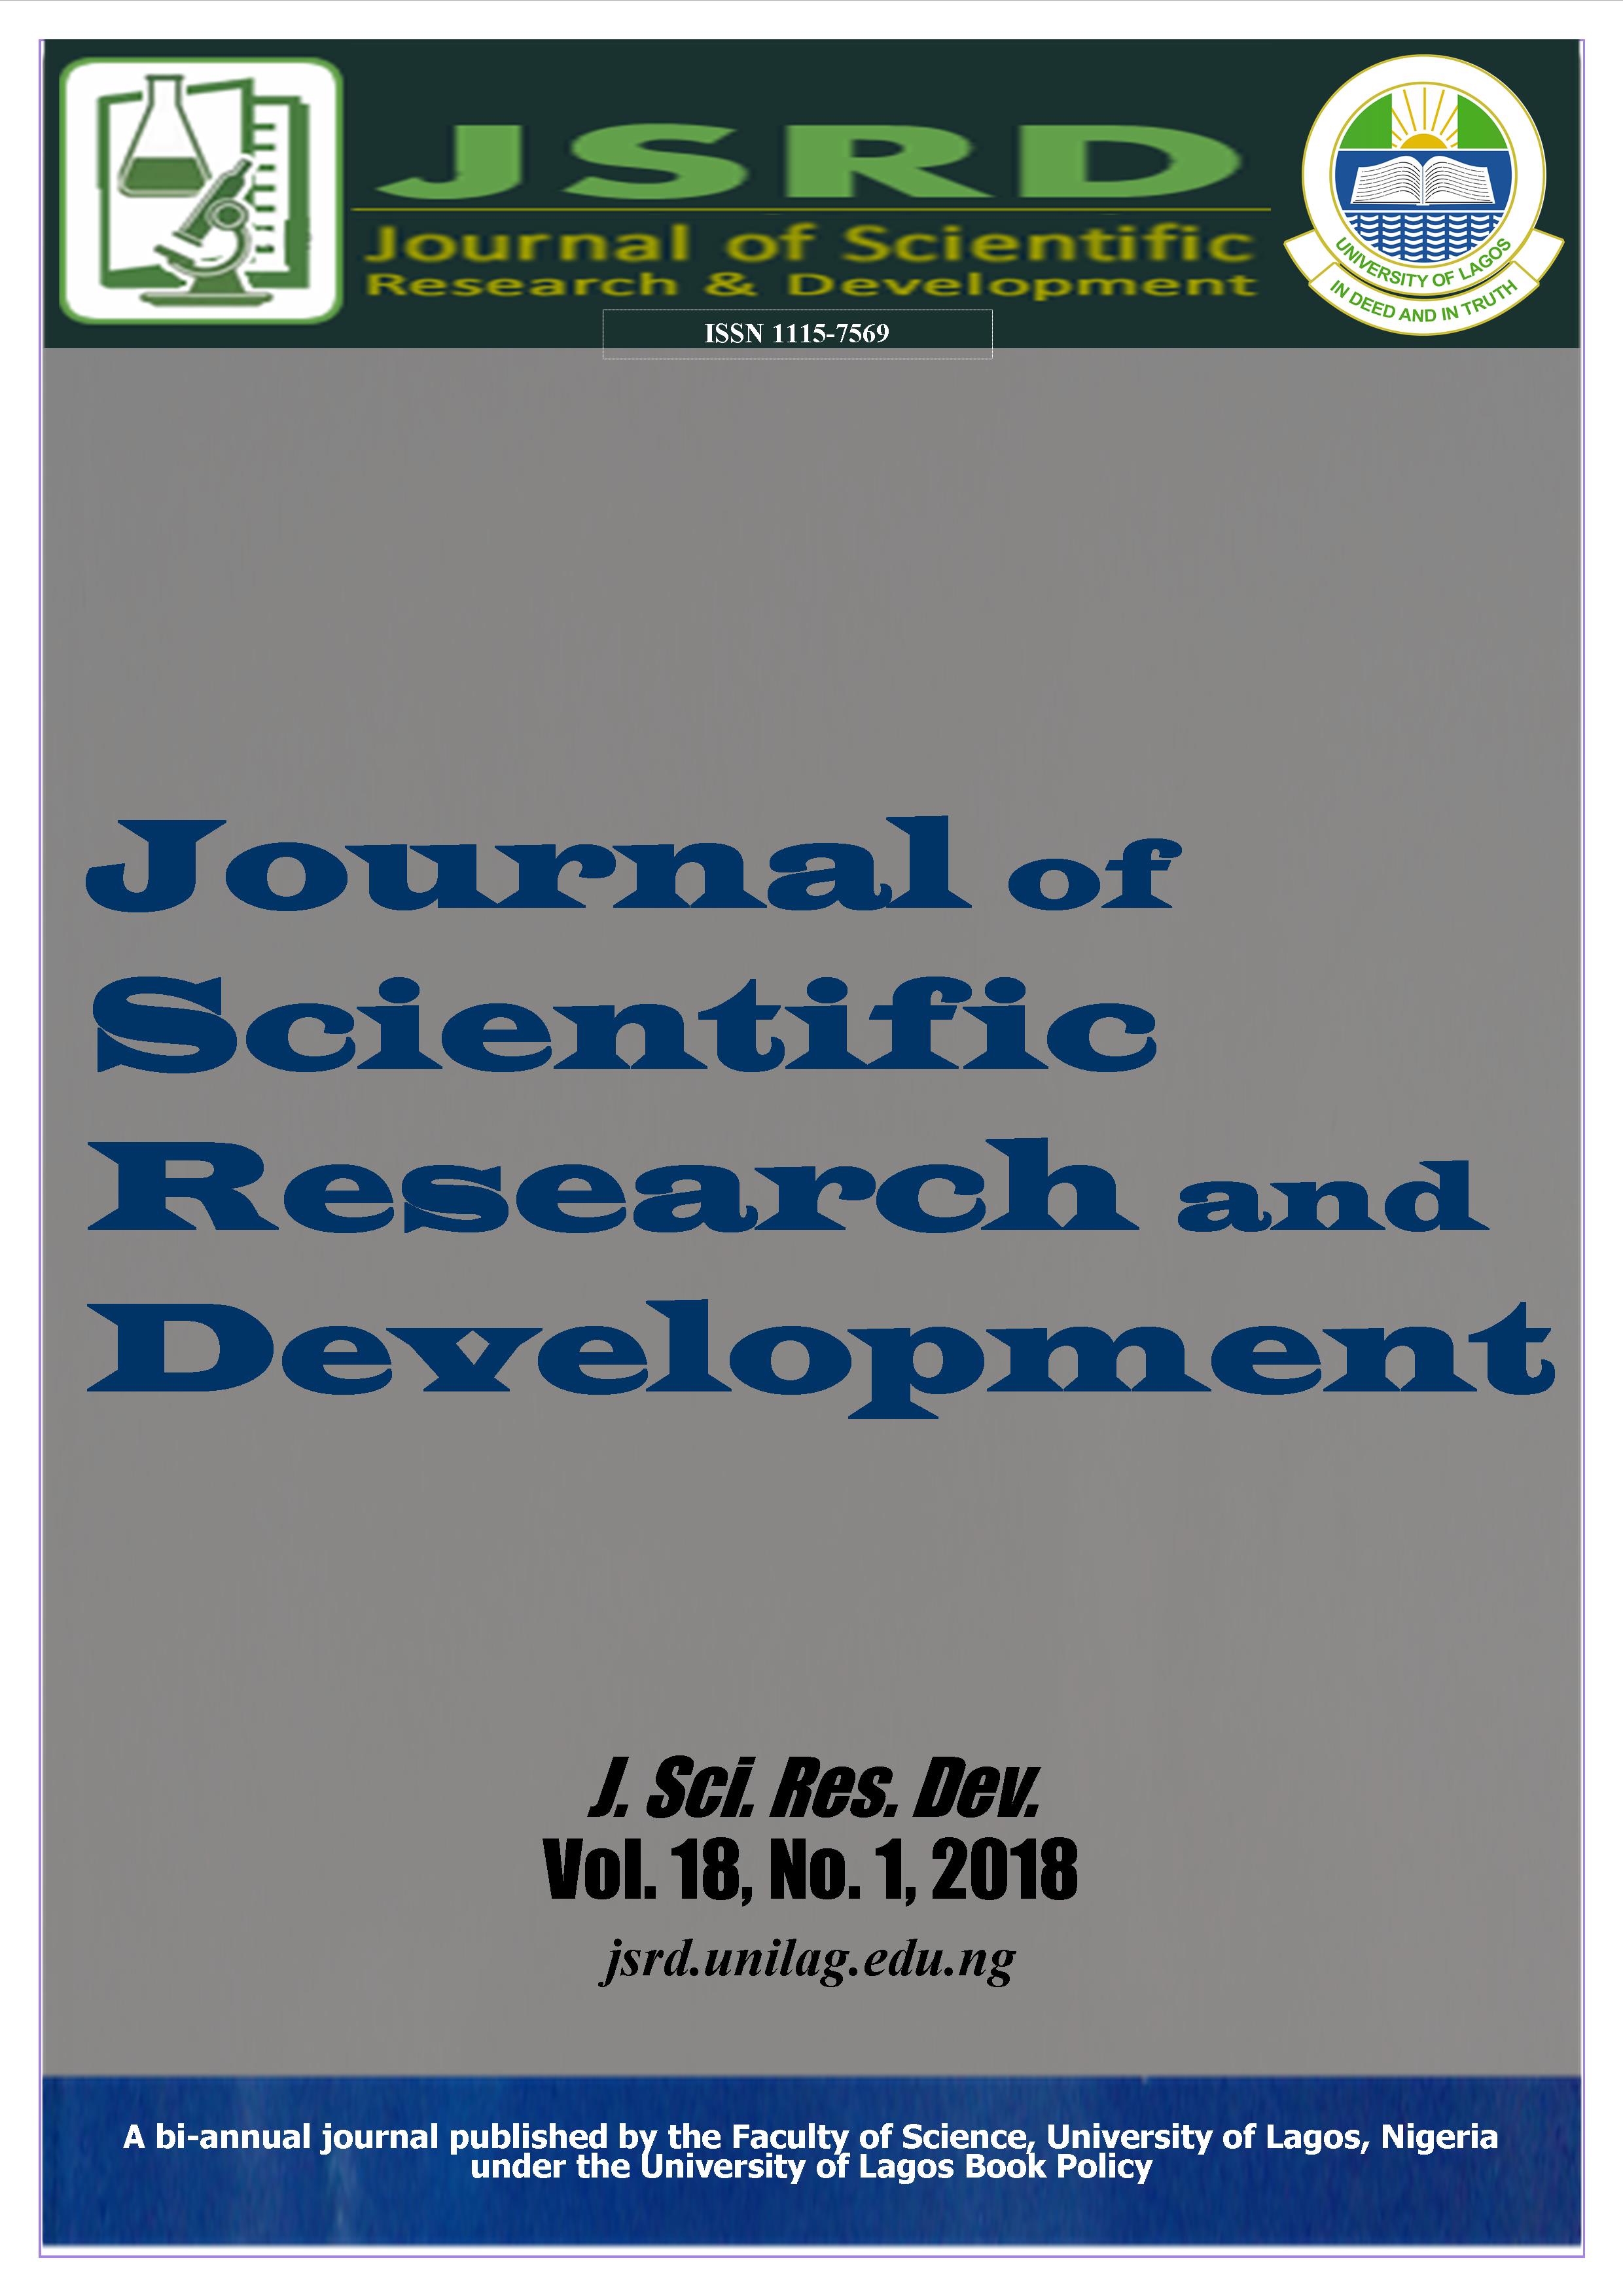 J. Sci. Res. Dev. Vol. 18, No. 1 (2018)